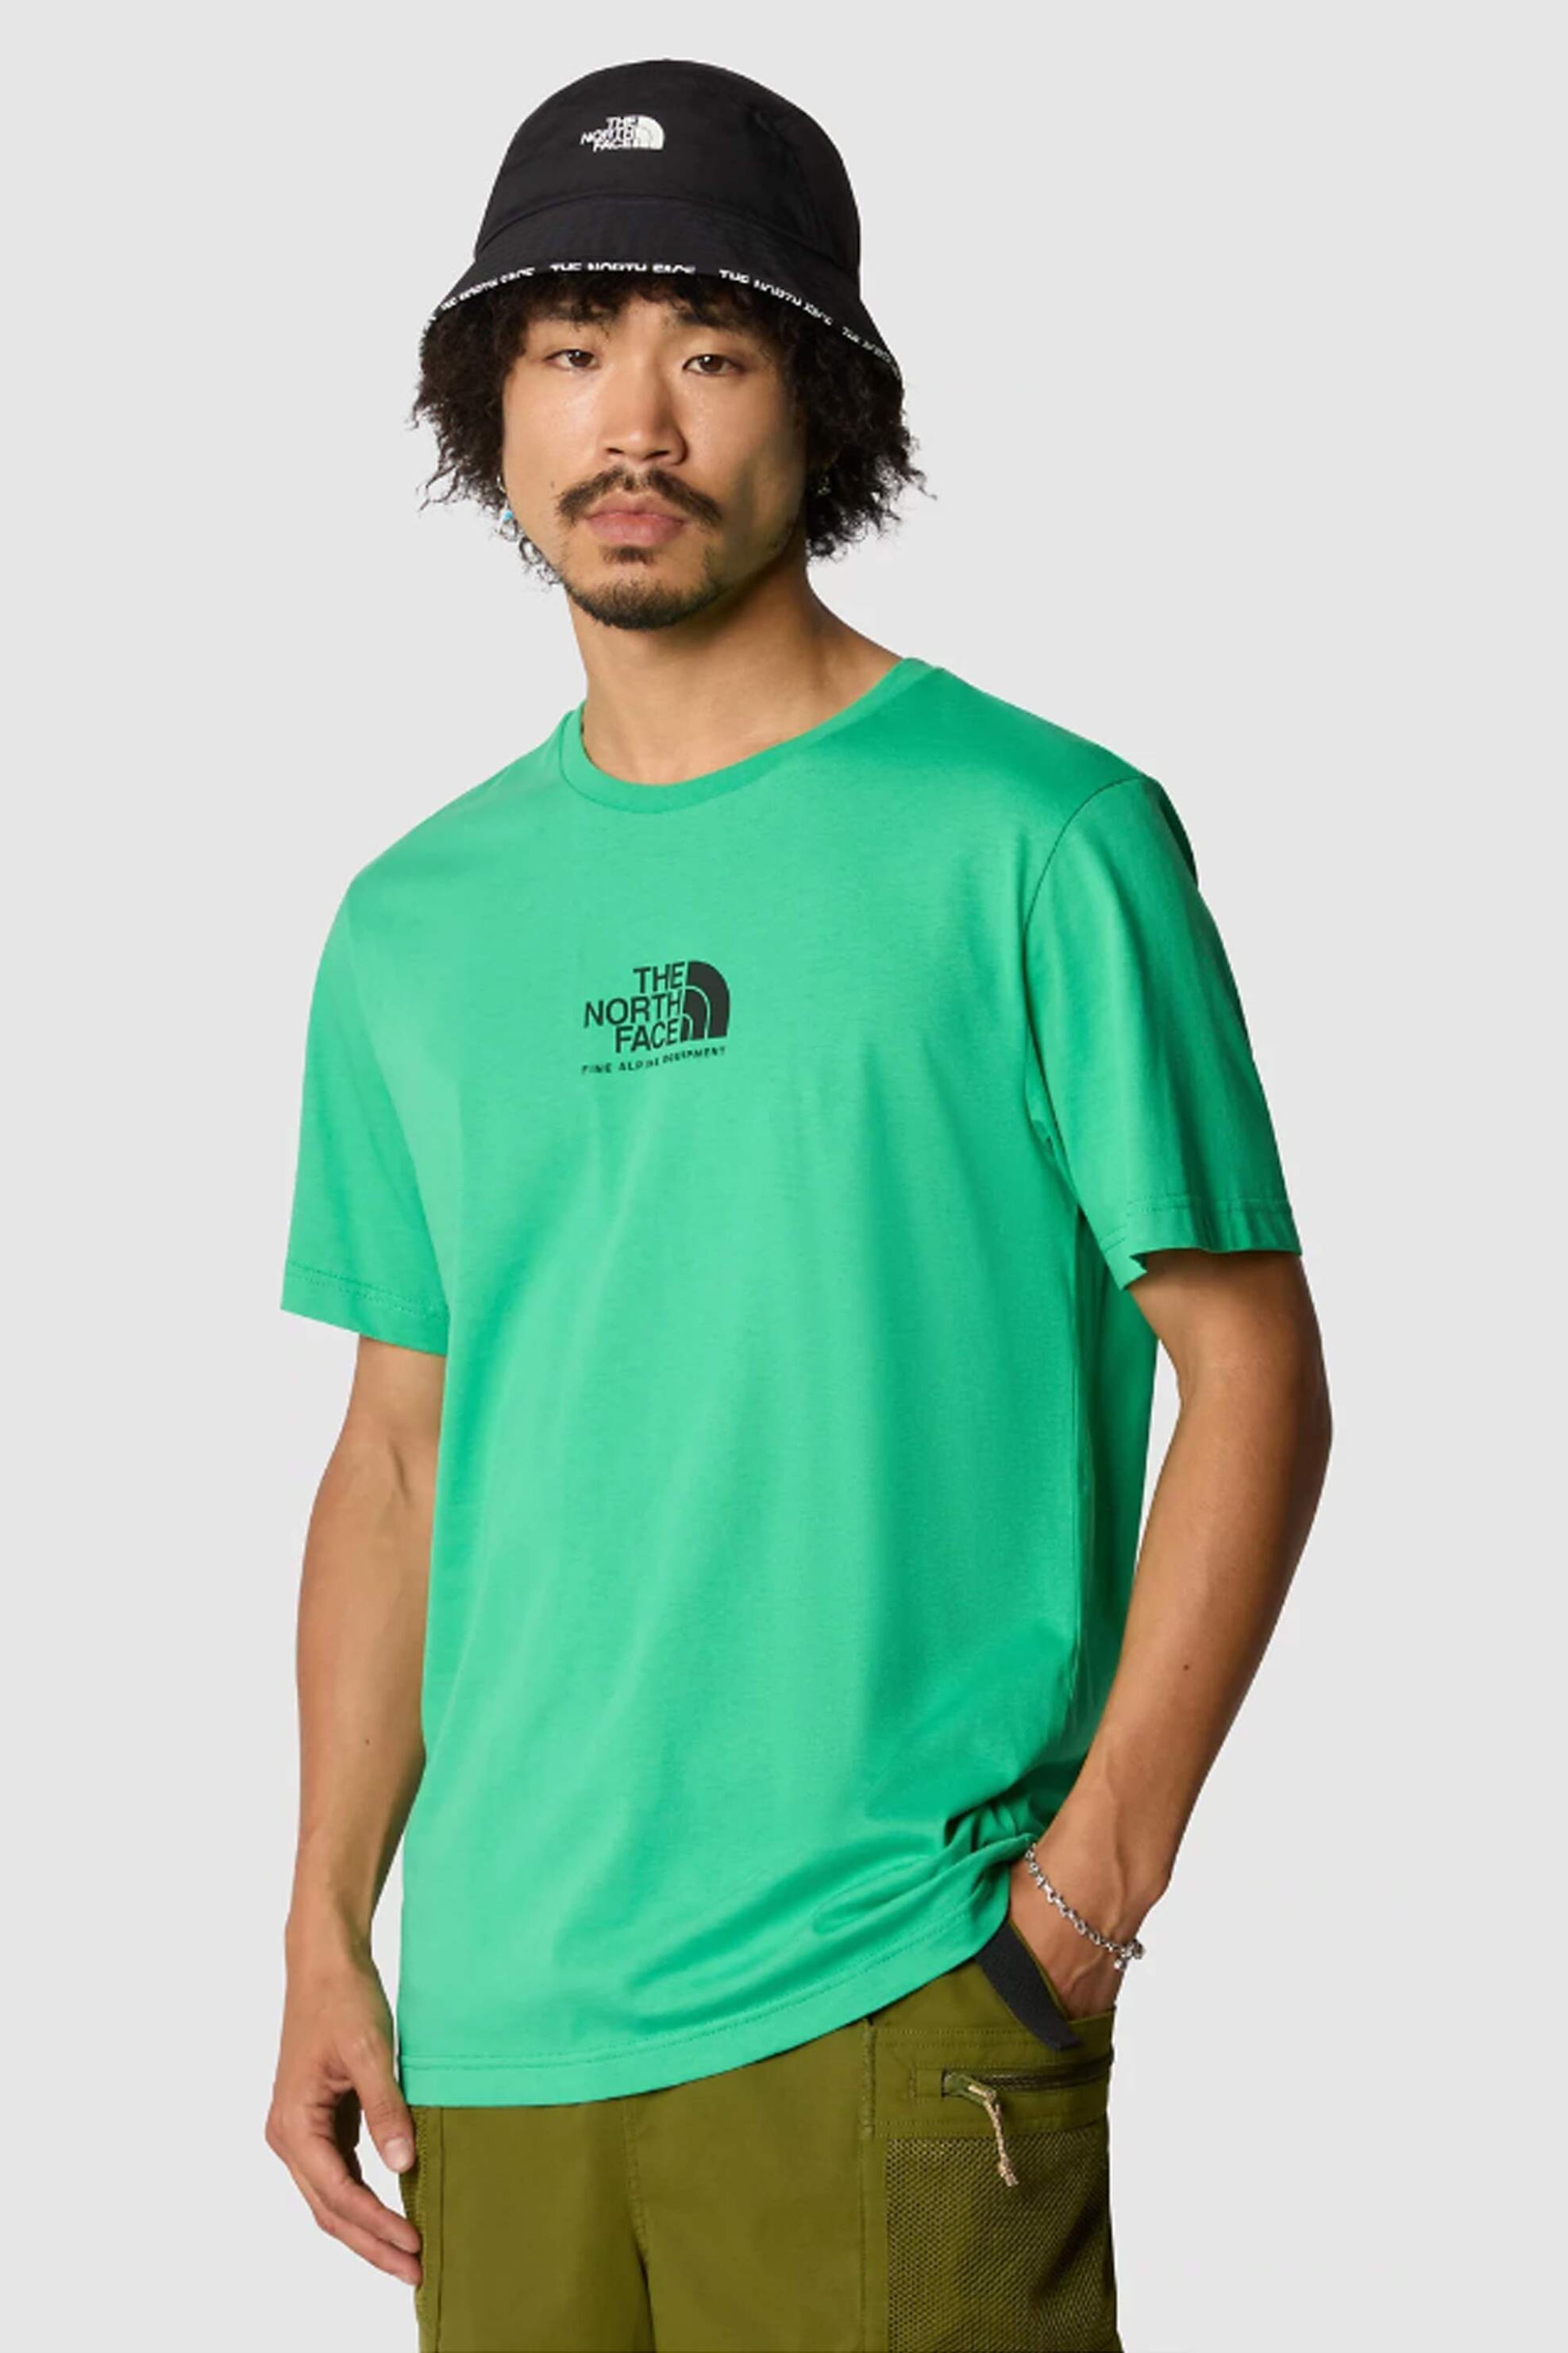 Ανδρική Μόδα > Ανδρικά Ρούχα > Ανδρικές Μπλούζες > Ανδρικά T-Shirts The North Face ανδρικό T-shirt μονόχρωμο βαμβακερό με contrast λογότυπο "Fine Alpine Equipment" - NF0A87U3PO81 Πράσινο Tropical